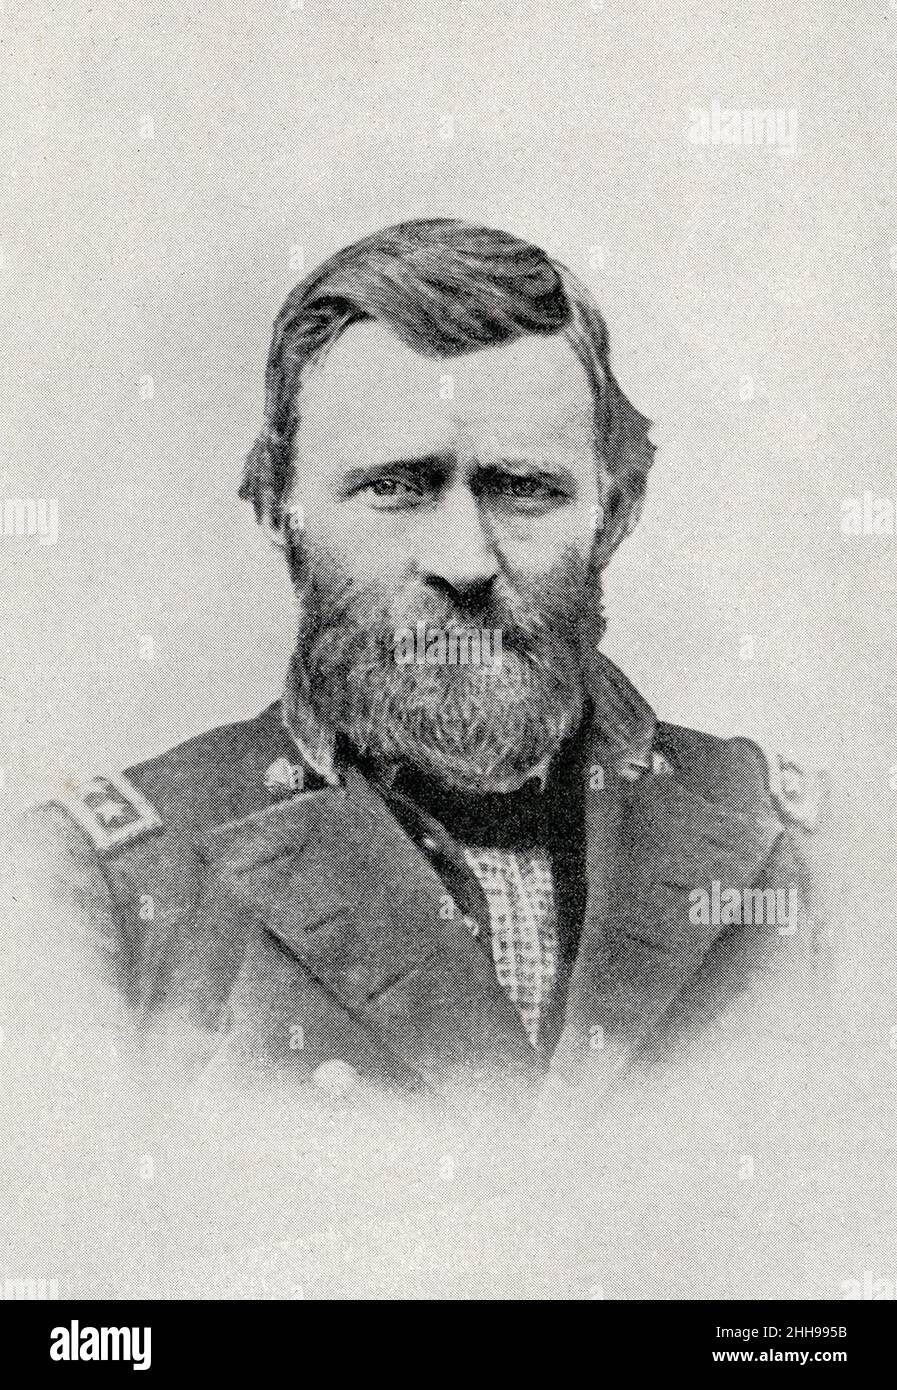 Ulysses S. Grant (1822 - 1885) fue un oficial militar y político estadounidense que sirvió como presidente de los Estados Unidos en 18th de 1869 a 1877. Foto de stock